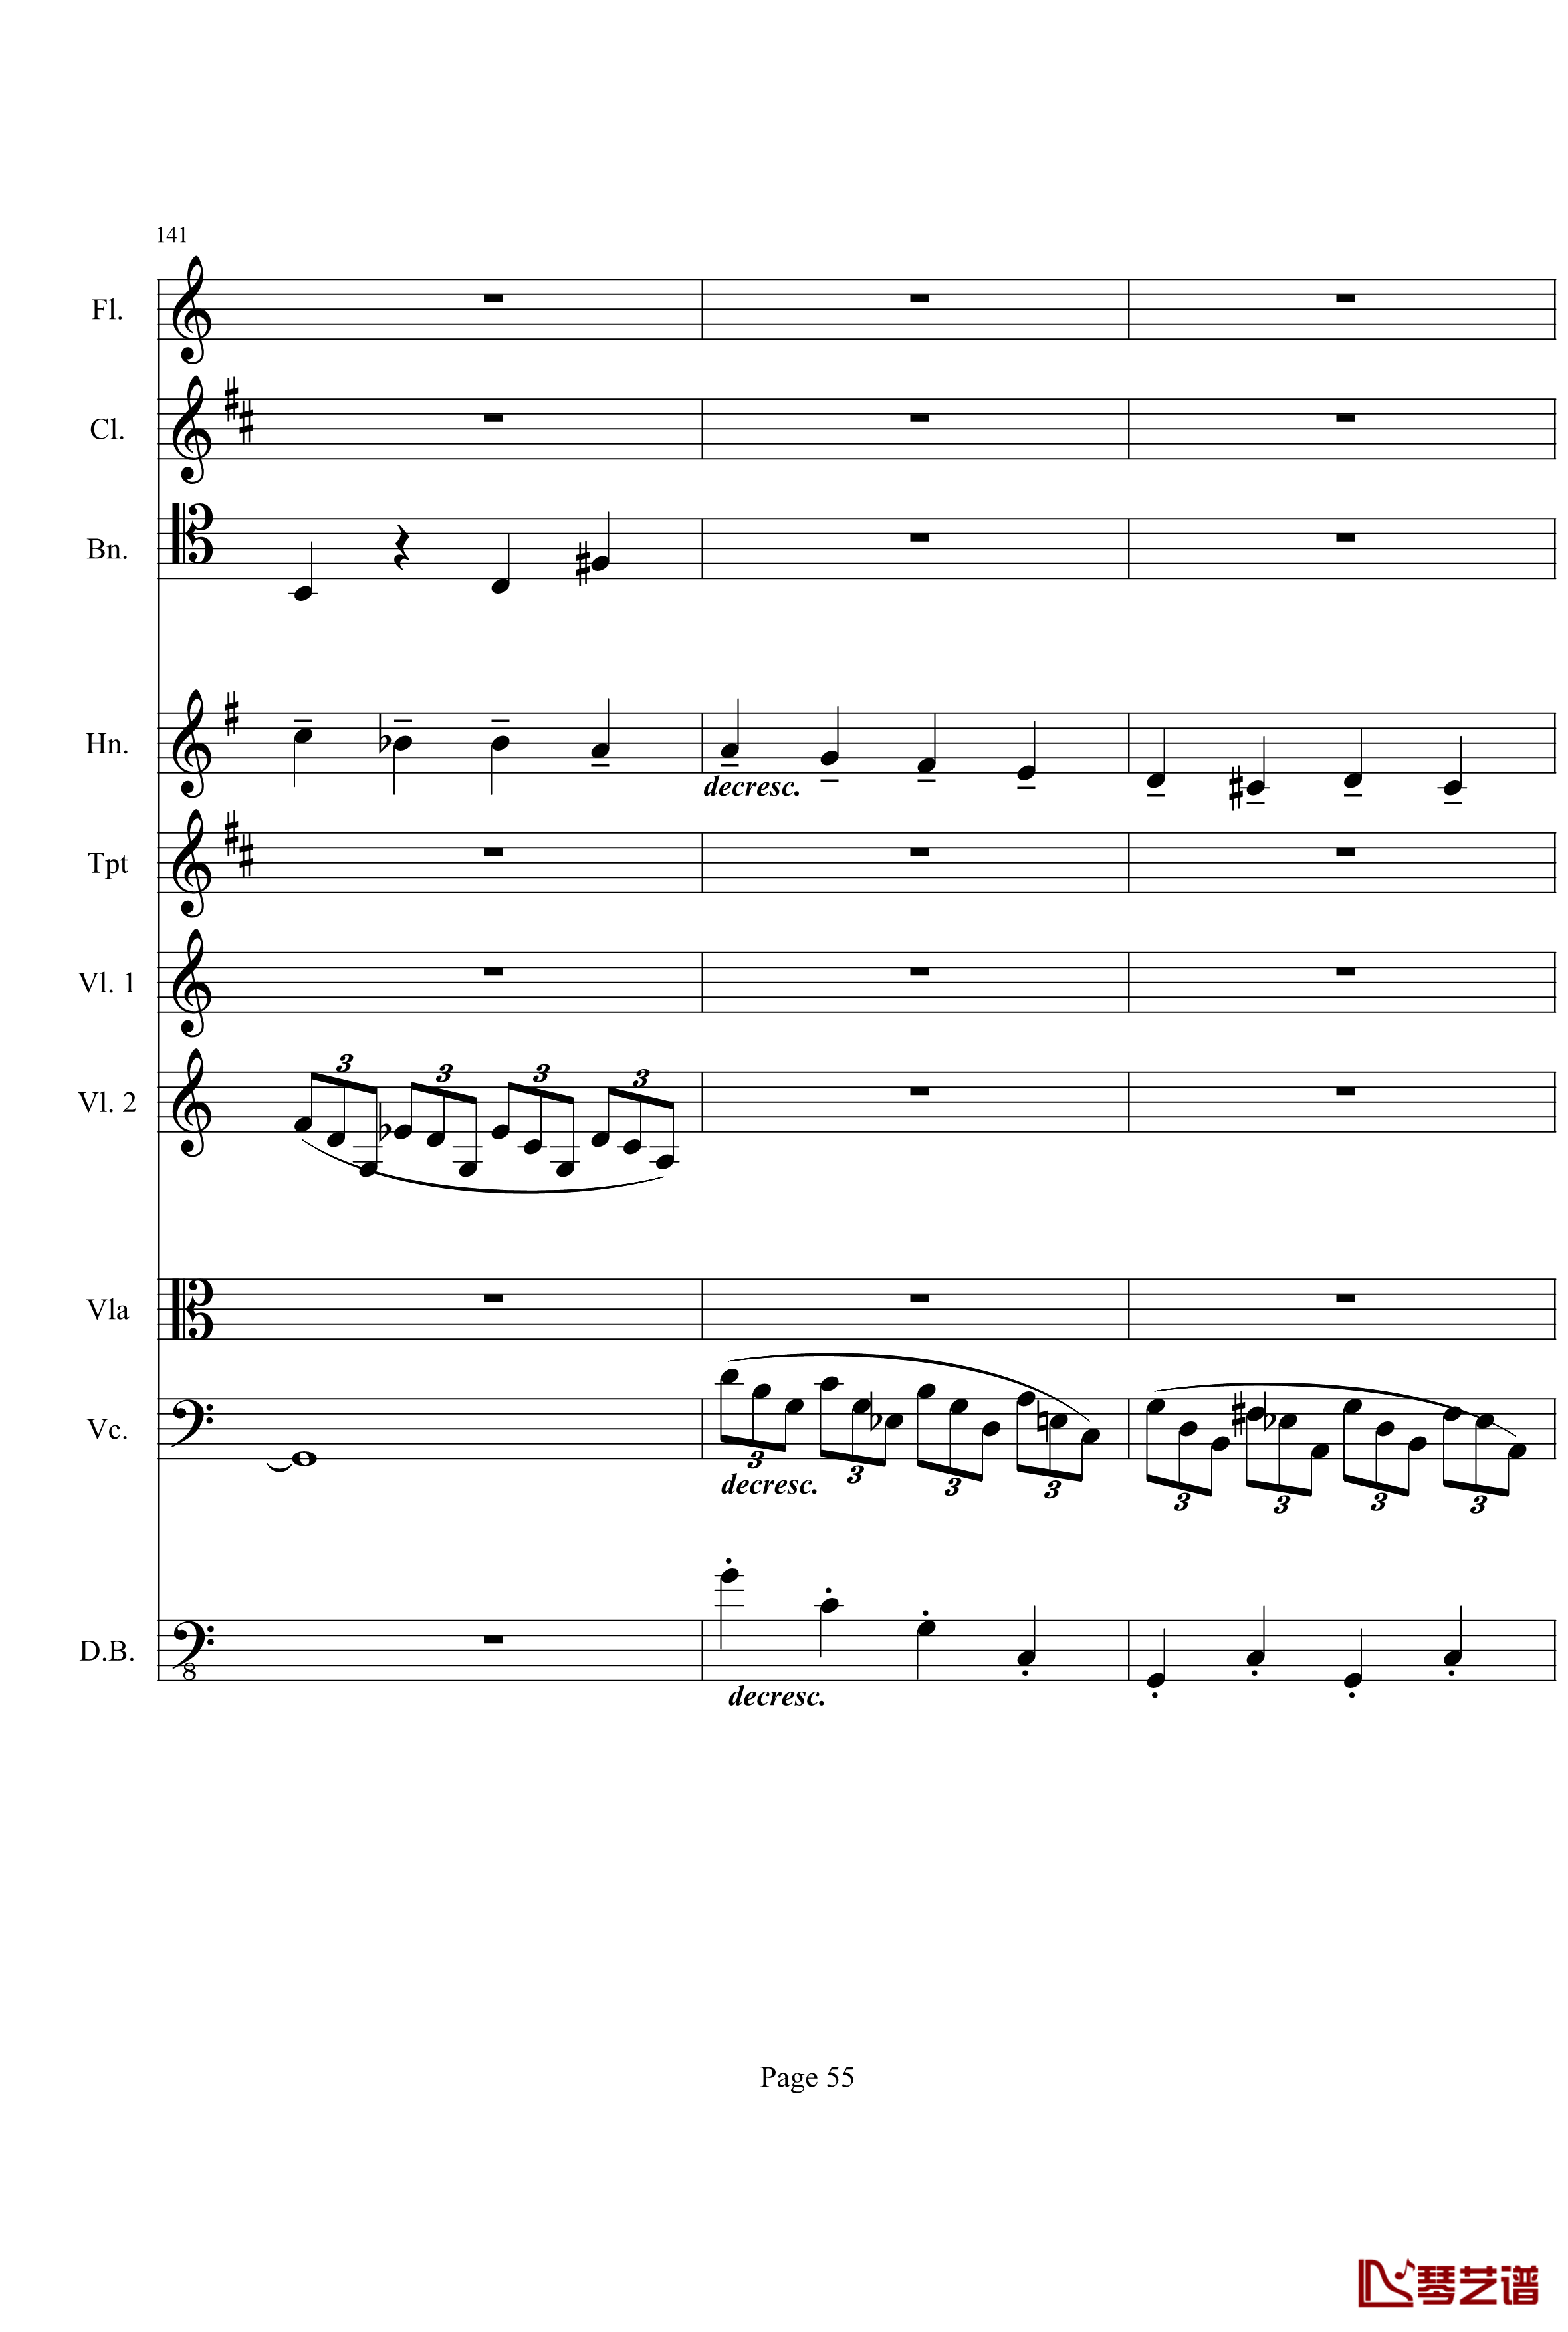 奏鸣曲之交响钢琴谱-第21-Ⅰ-贝多芬-beethoven55